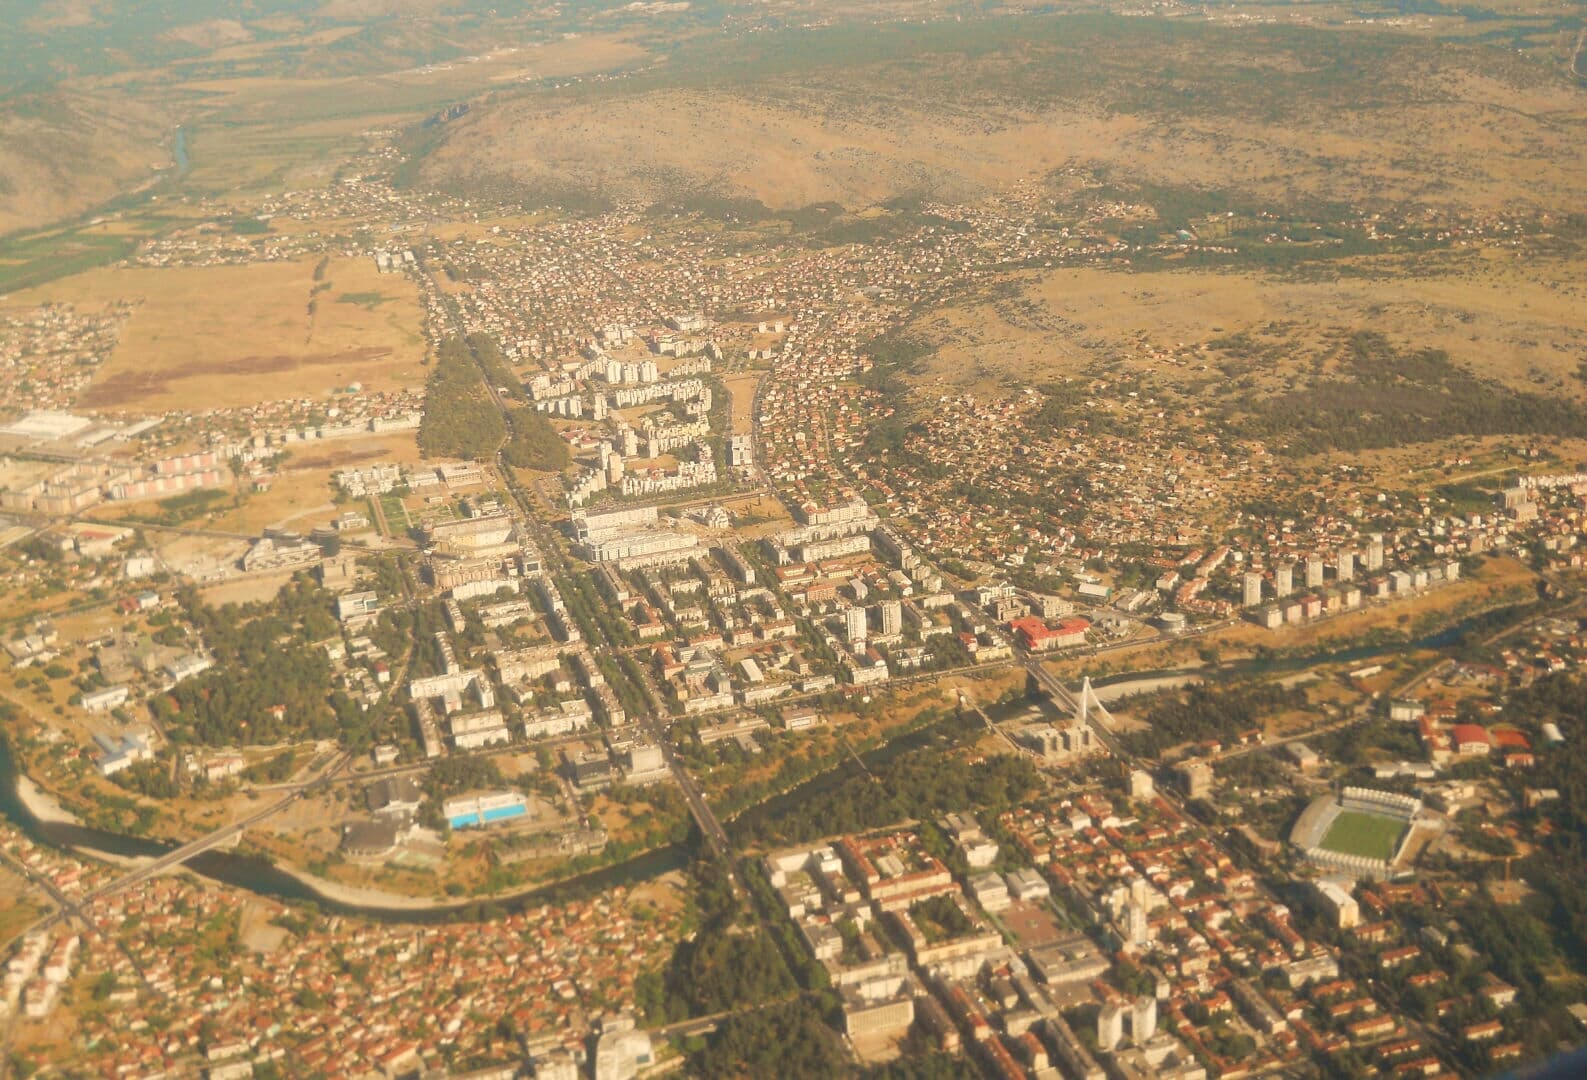 Podgorica photo